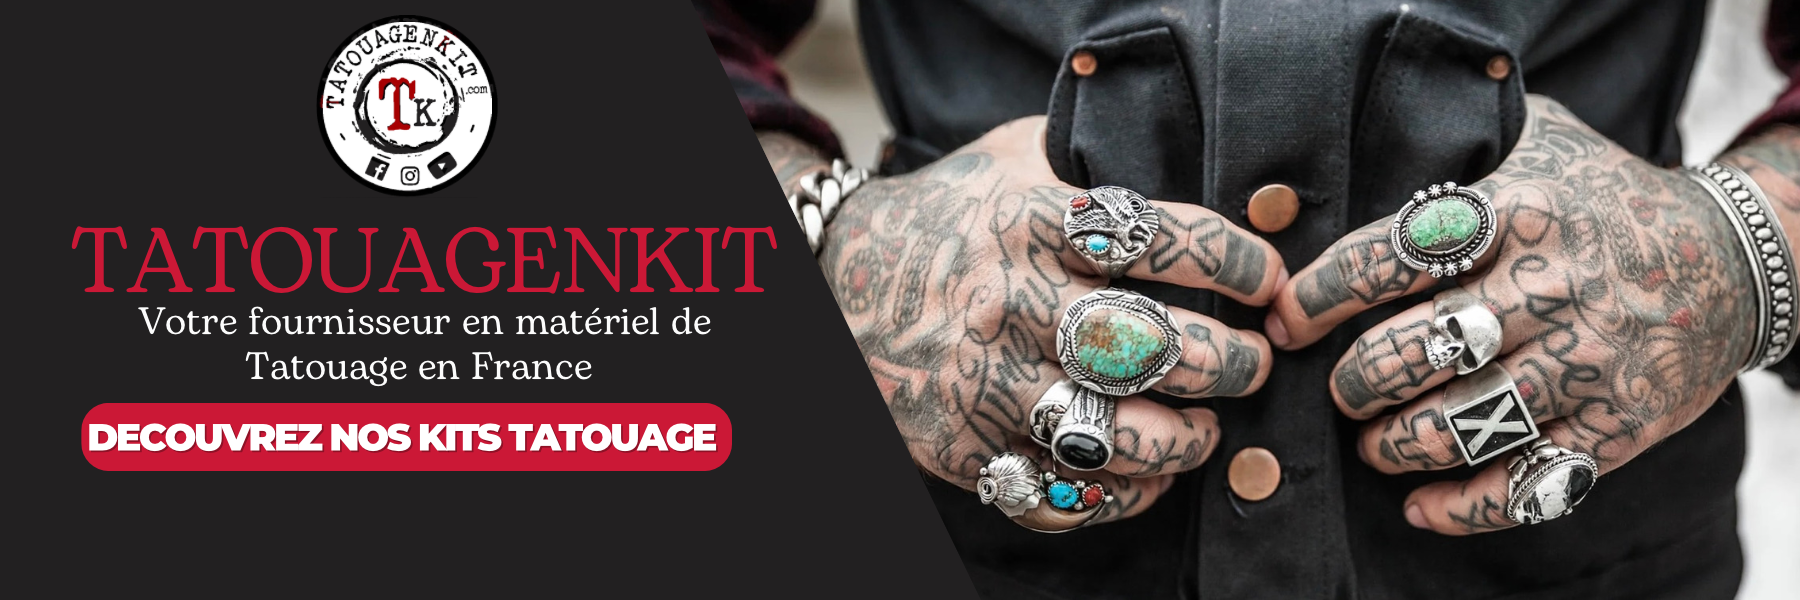 Tatouagenkit fournitures et matériel de tatouage en France 